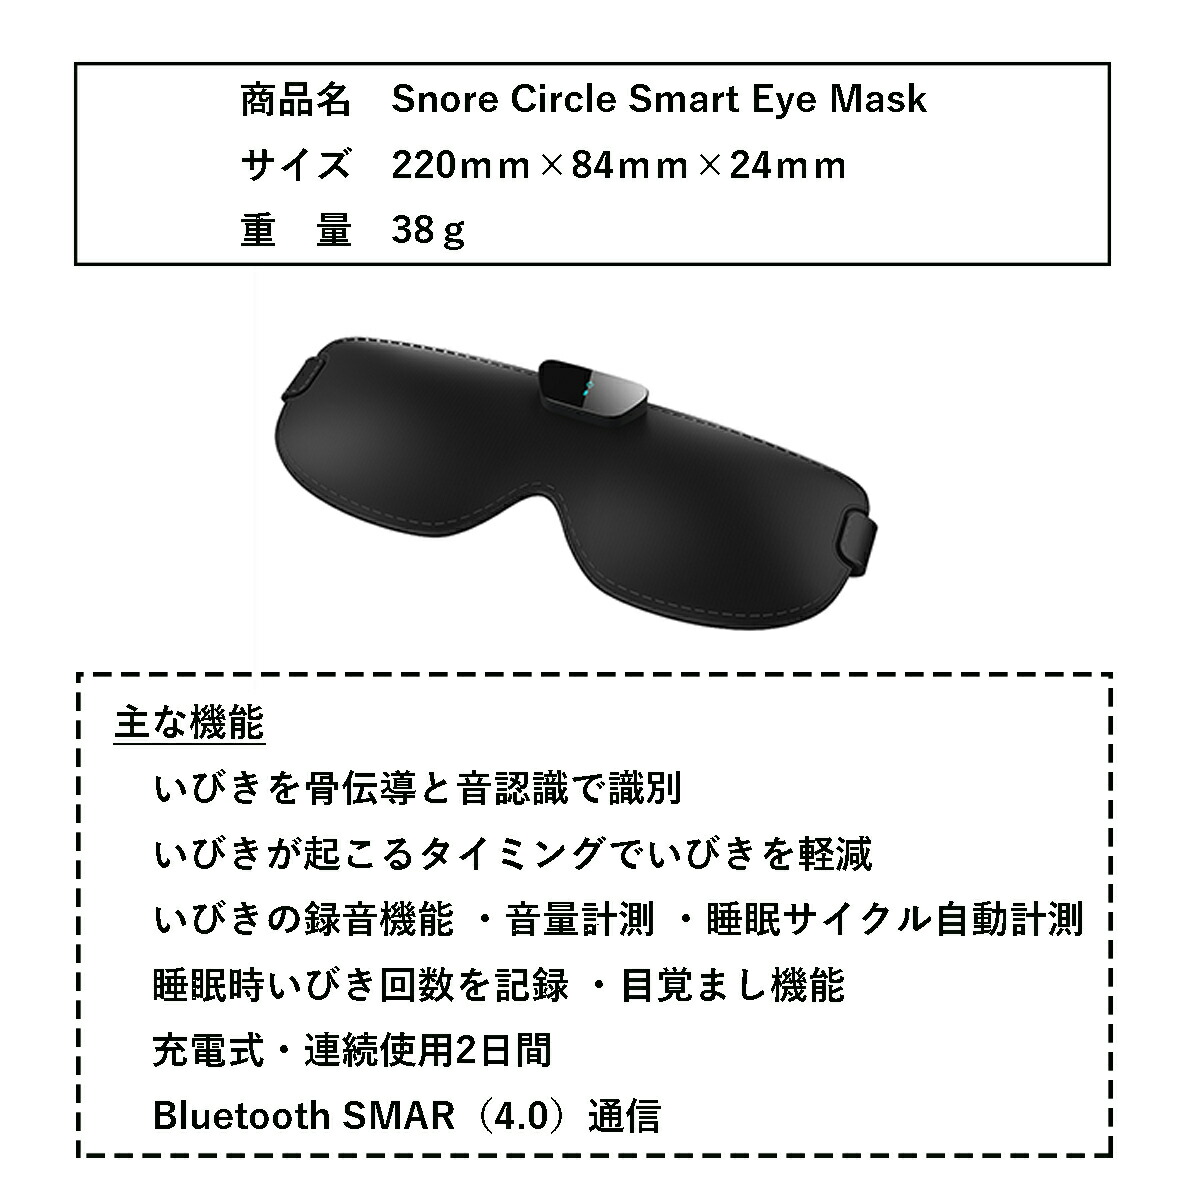 製品仕様
商品名：Snore Circle Smart Eye Mask
サイズ：220mm×84mm×24mm
重量：38g
主な機能：
・いびきを骨伝導と音認識で識別
・いびきが起こるタイミングでいびきを軽減
・いびきの録音機能・音量計測・睡眠サイクル自動計測・睡眠時いびき回数を記録・目覚まし機能
・充電式・連続使用2日間
・Bluetooth SMAR（4.0）通信